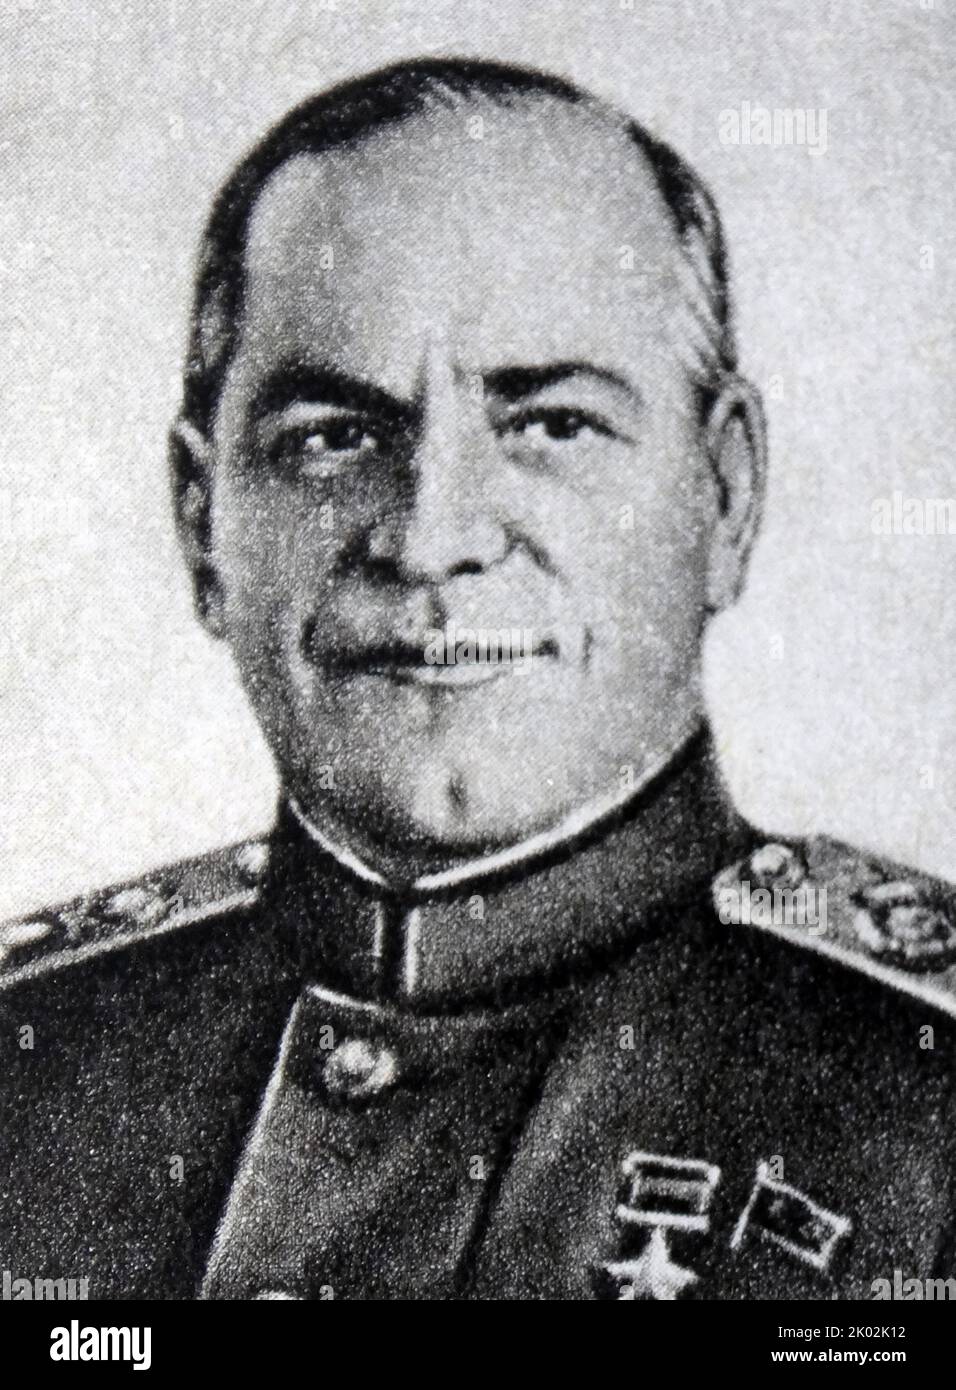 Georgy Konstantinovich Zhukov (1896 - 1974) Maresciallo dell'Unione Sovietica. Ha anche ricoperto la carica di Capo dello Stato maggiore, Ministro della Difesa, ed è stato membro del Presidio del Partito Comunista (in seguito Politburo). Durante la seconda guerra mondiale, Foto Stock